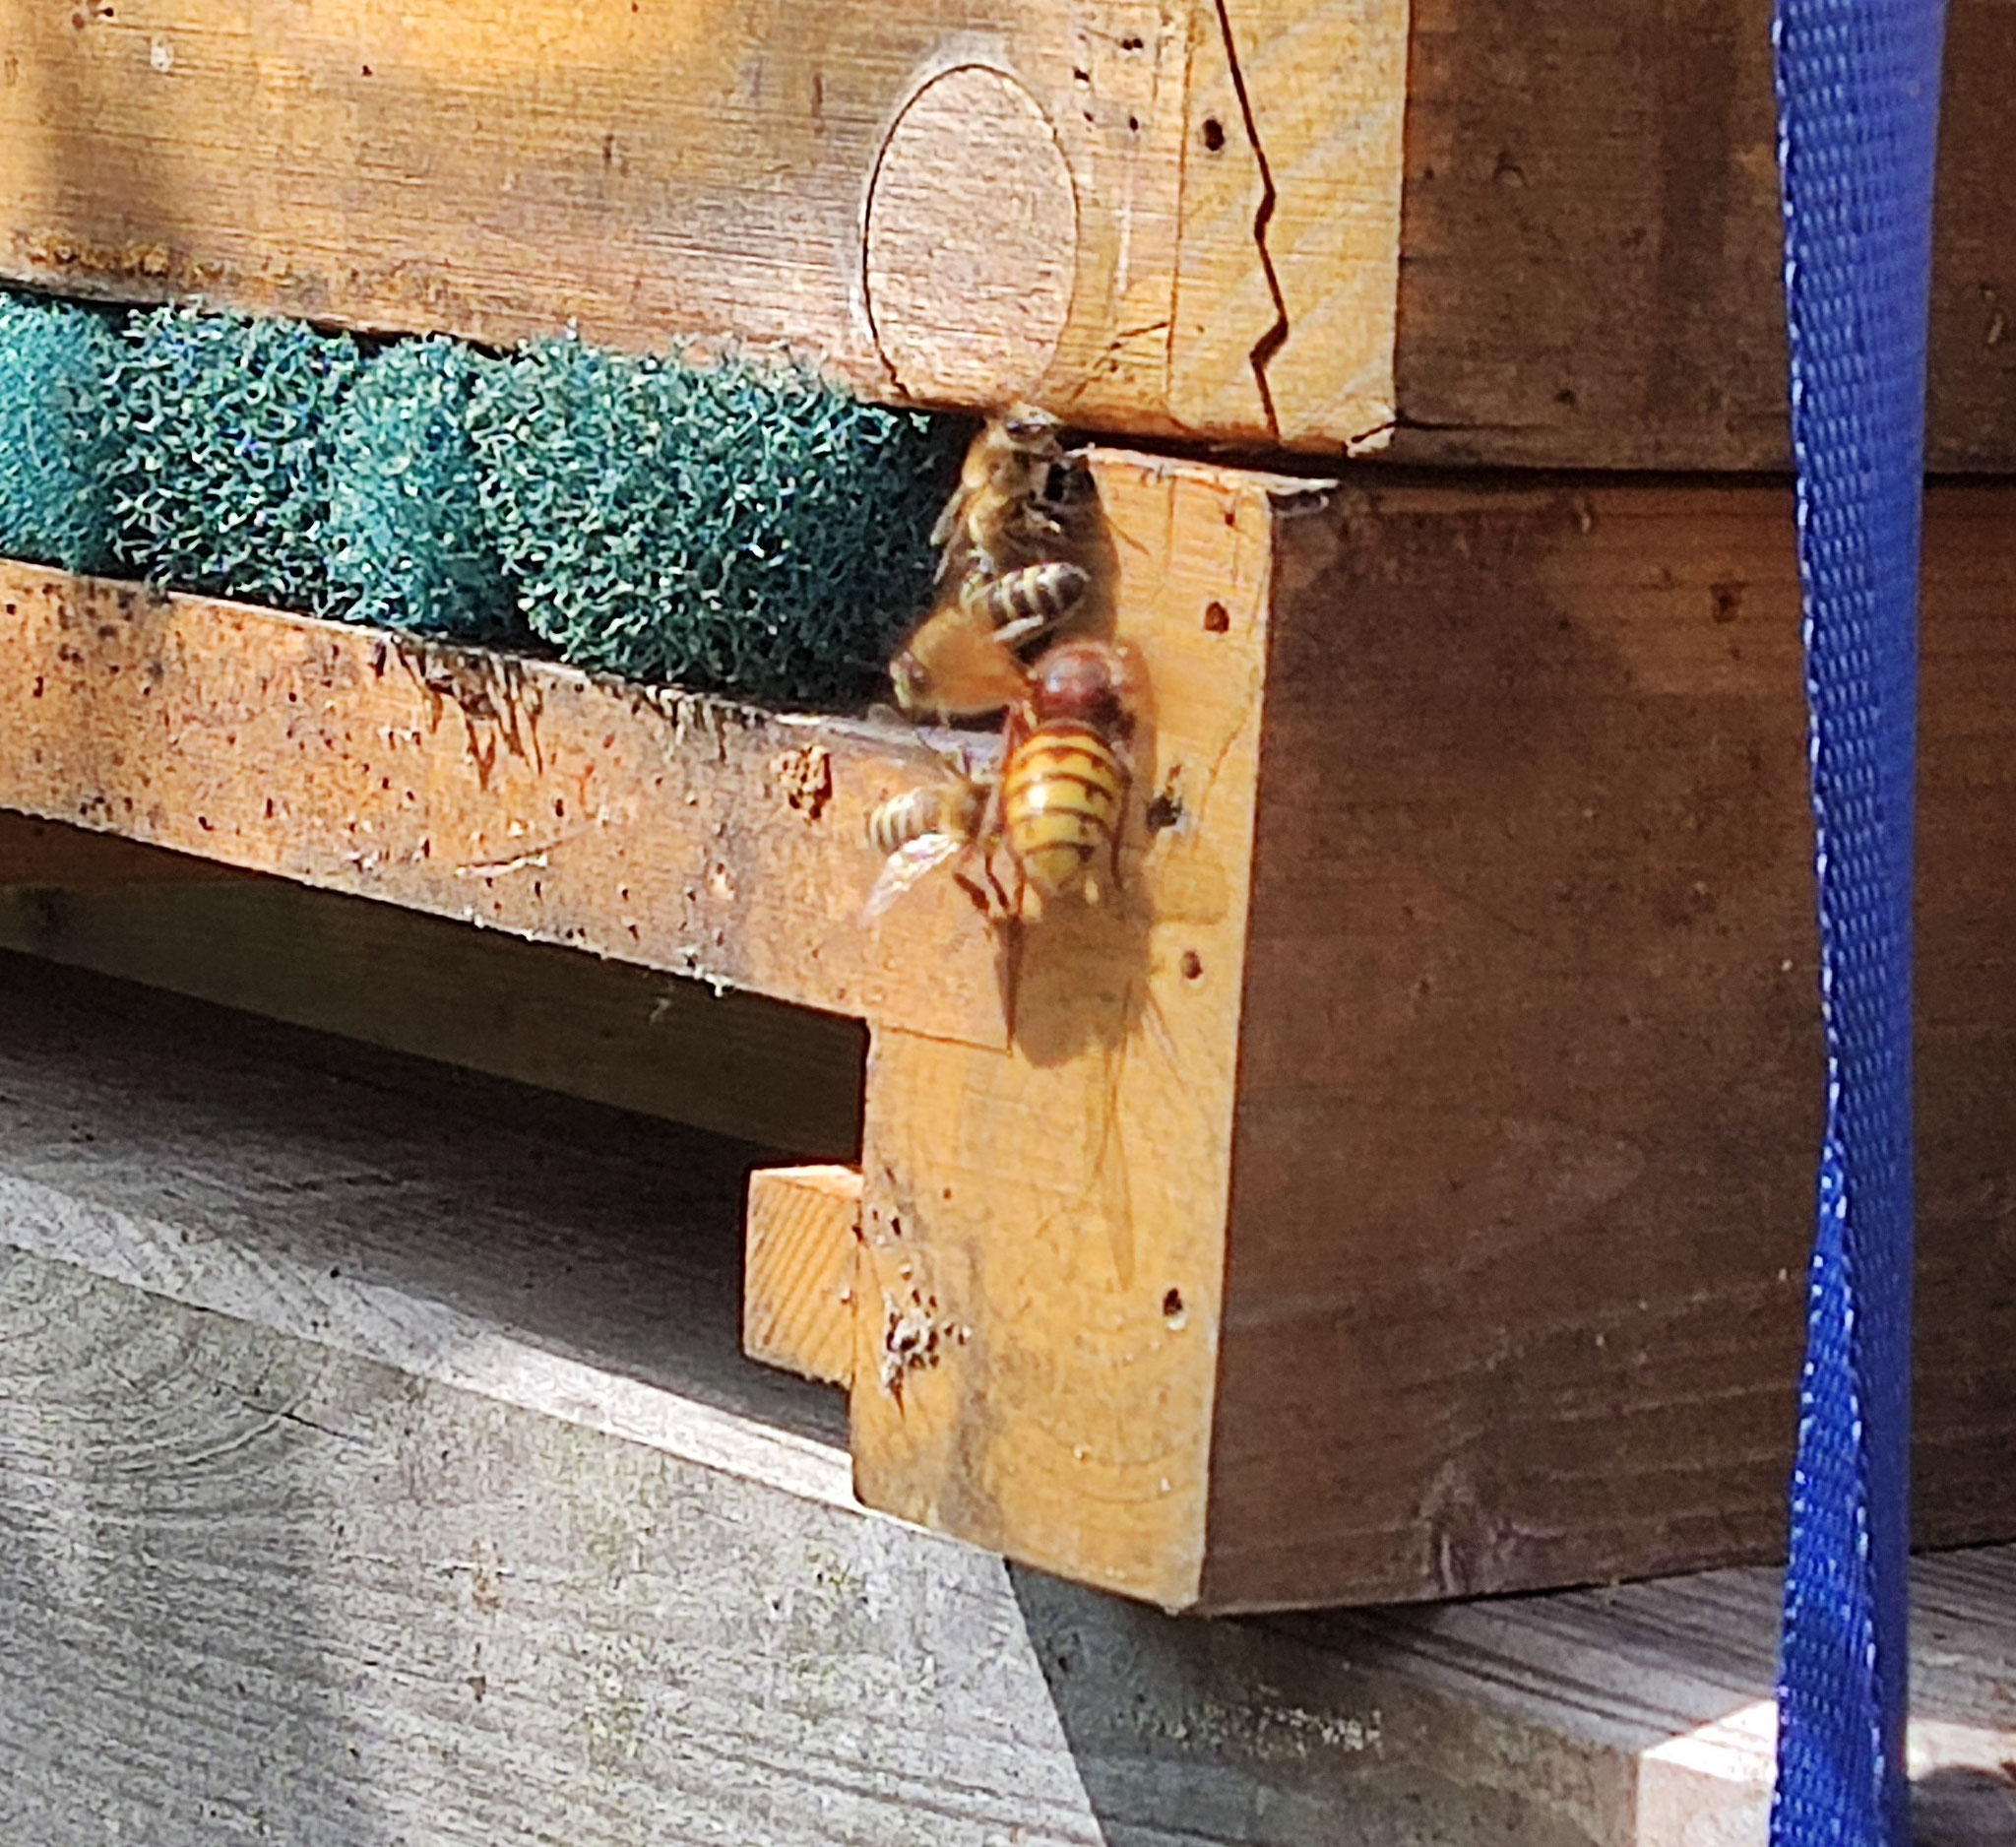 Hornisse versucht sich am Eingang einer Beute eine Biene zu schnappen